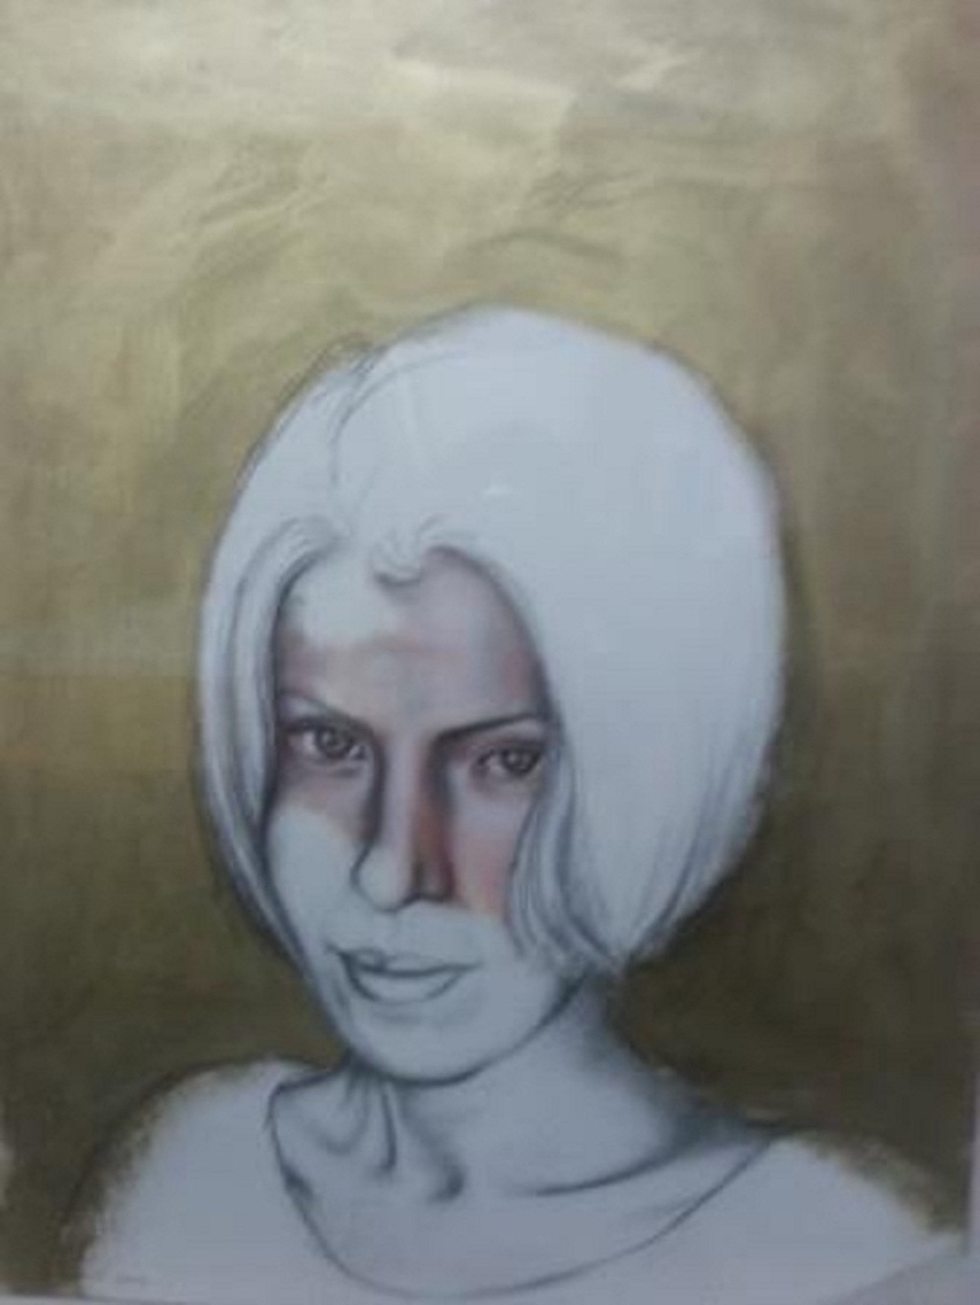 פנים של אישה - יצירה של פטמה אבו רומי ()